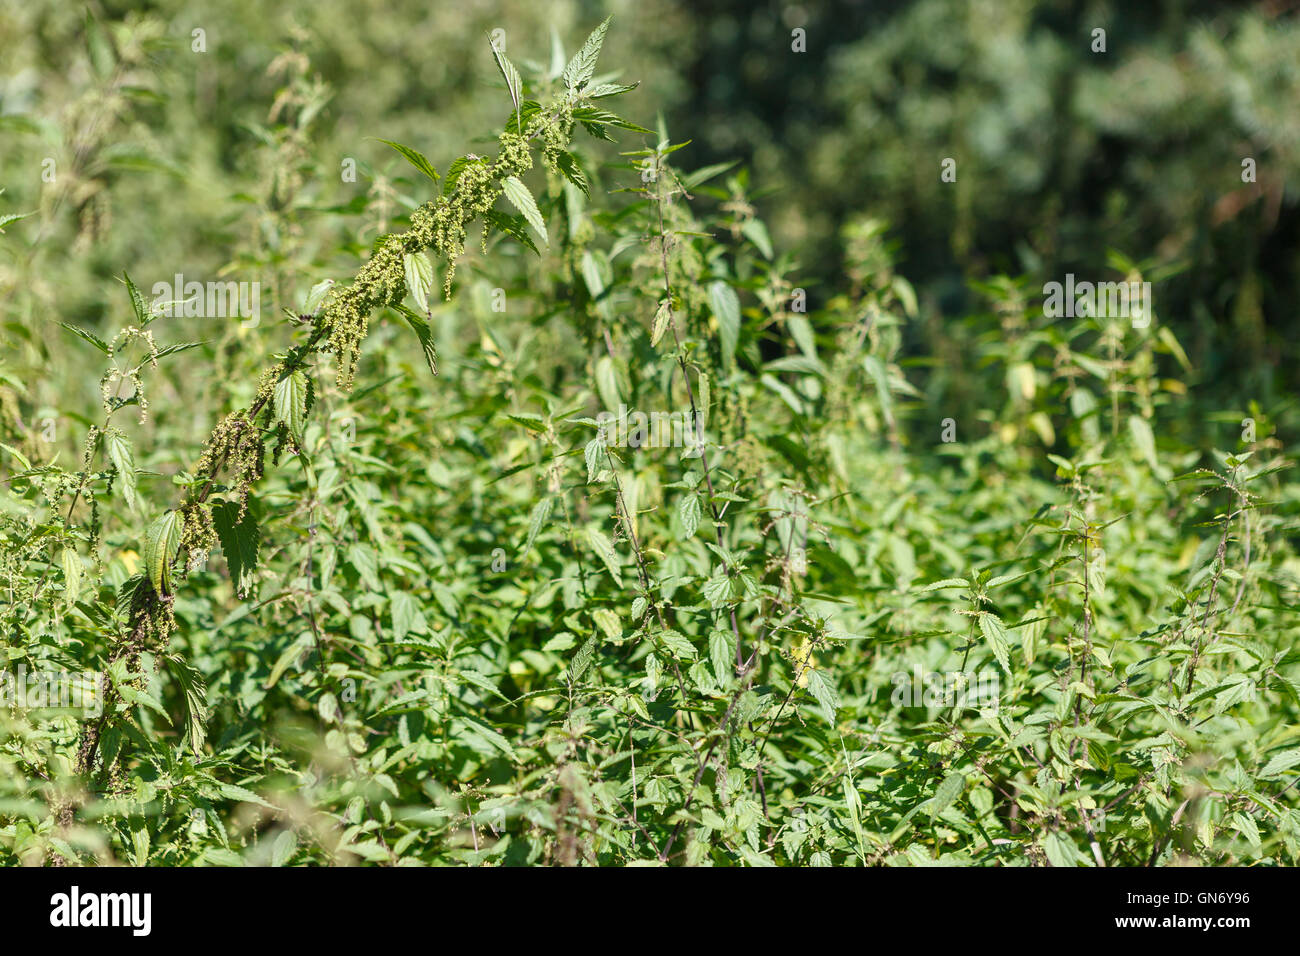 Herbal garden - nettle Stock Photo